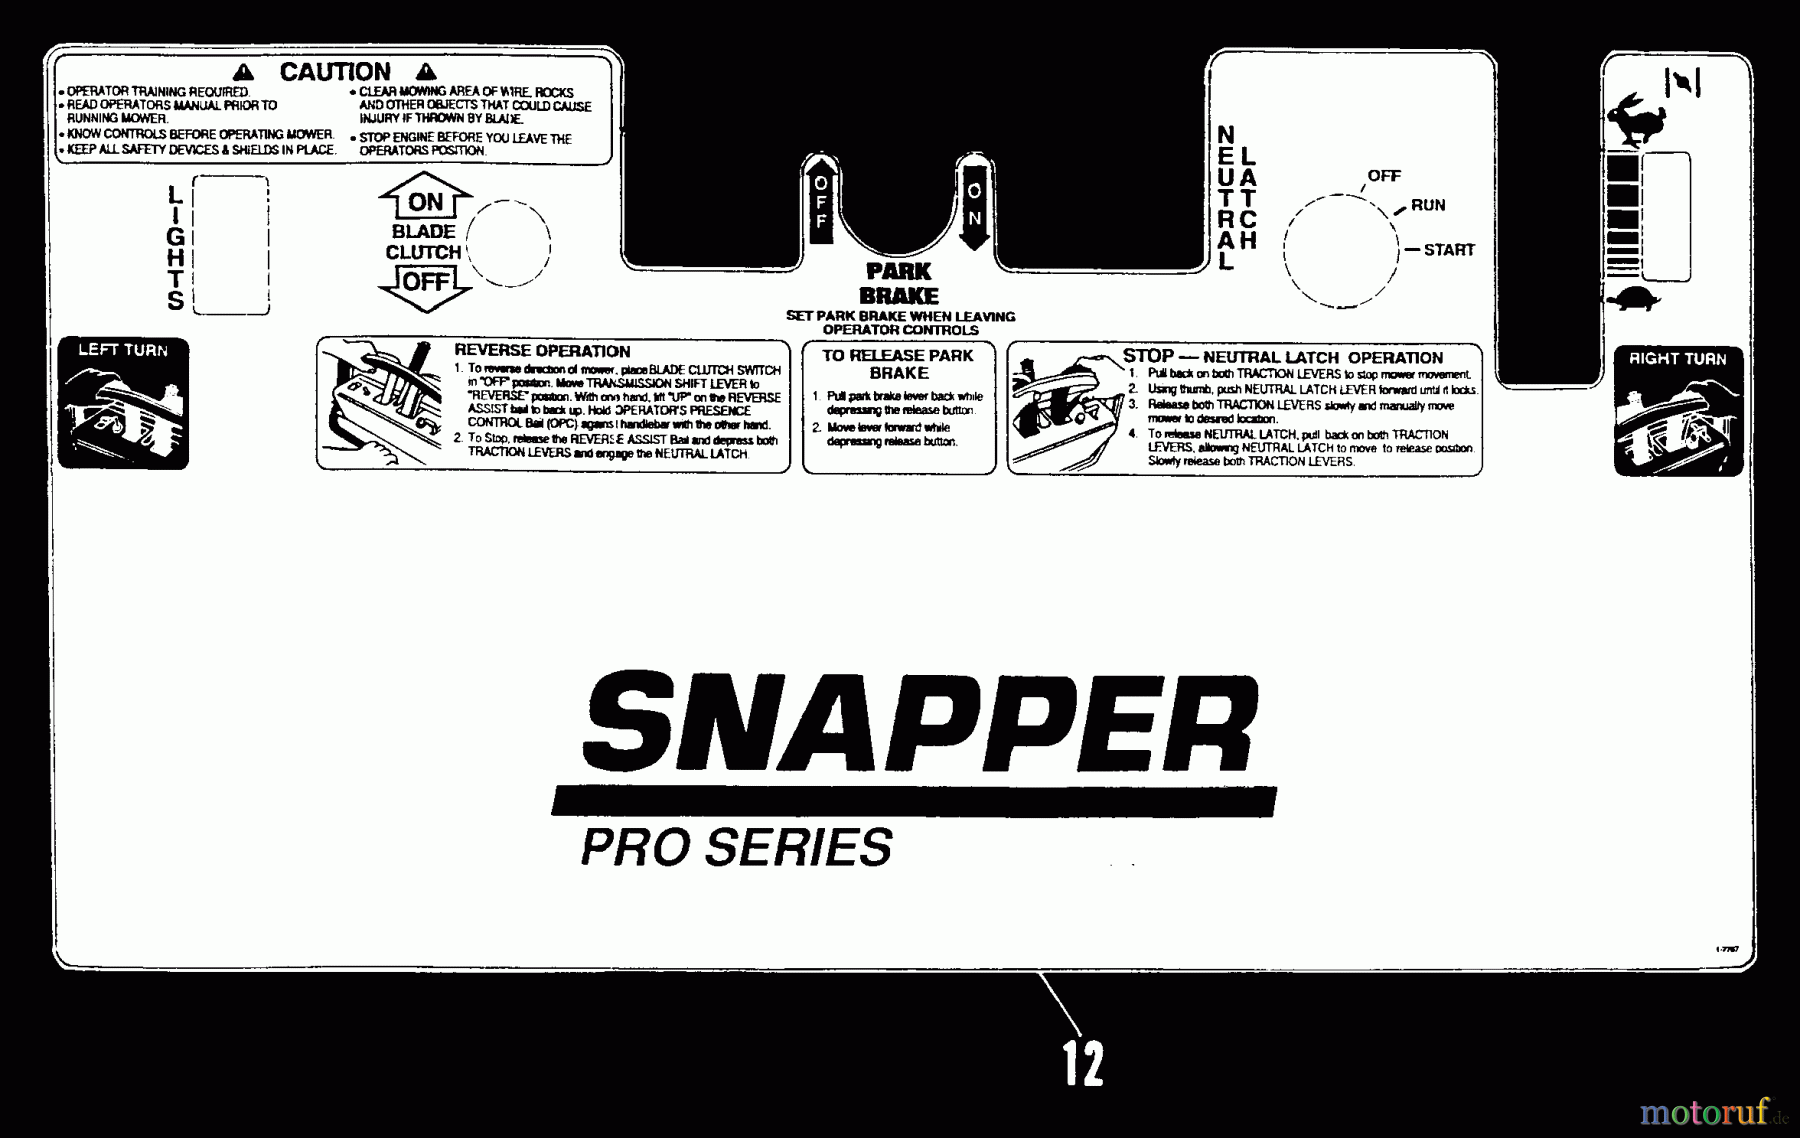  Snapper Rasenmäher für Großflächen PPU140R - Snapper Wide-Area Walk-Behind Mower, 14 HP, Mid-Size Gear Drive, Series 0 Decal Kit (Part 2)